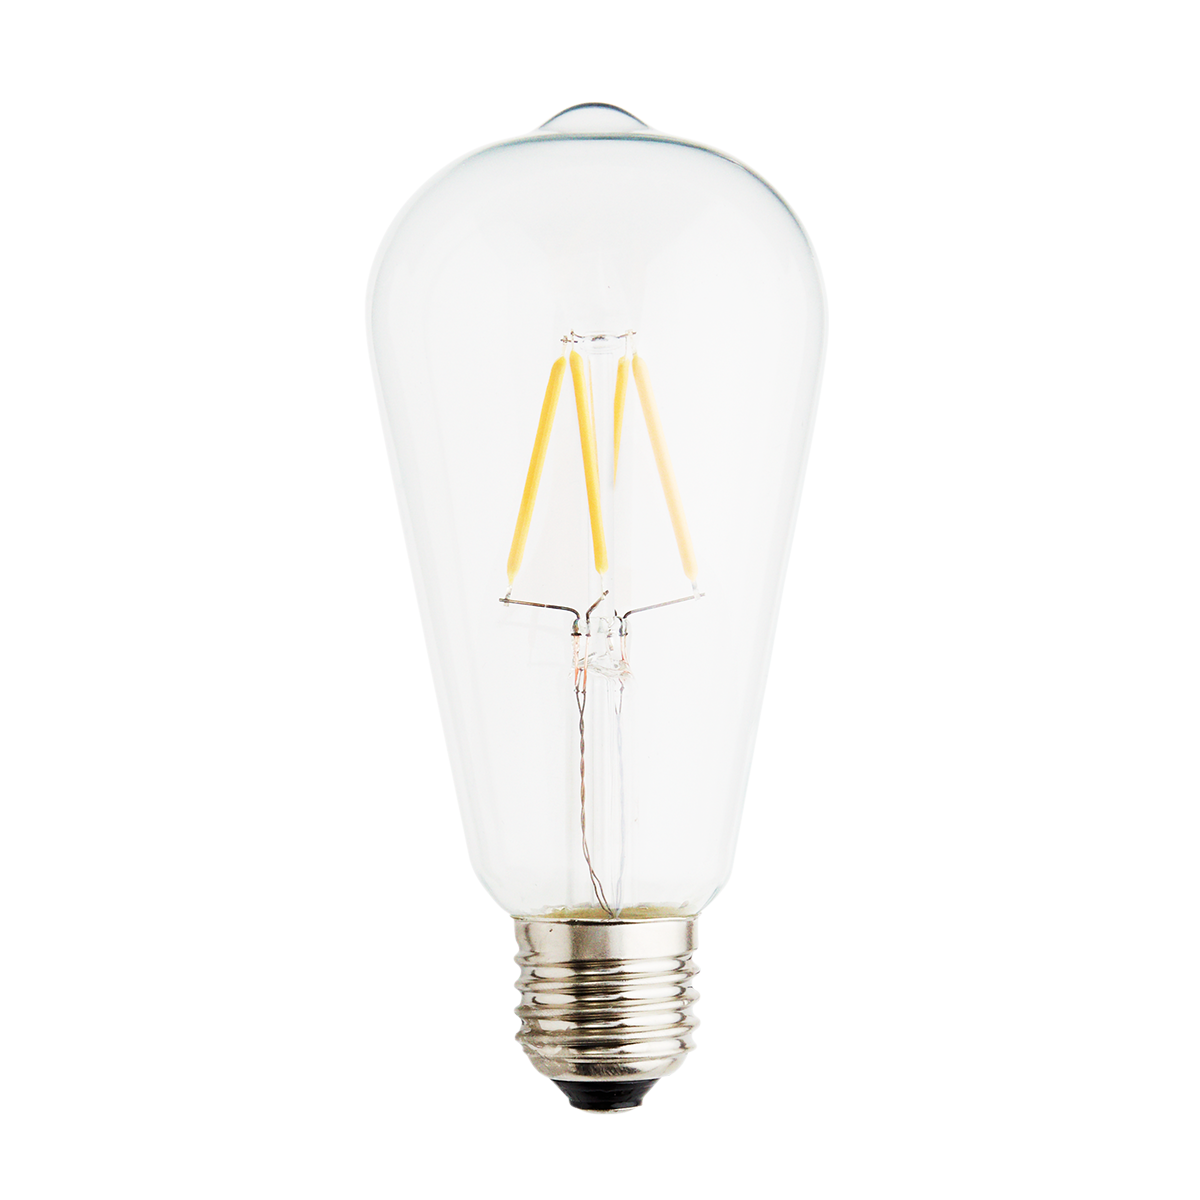 LED bulb, 4W, E27